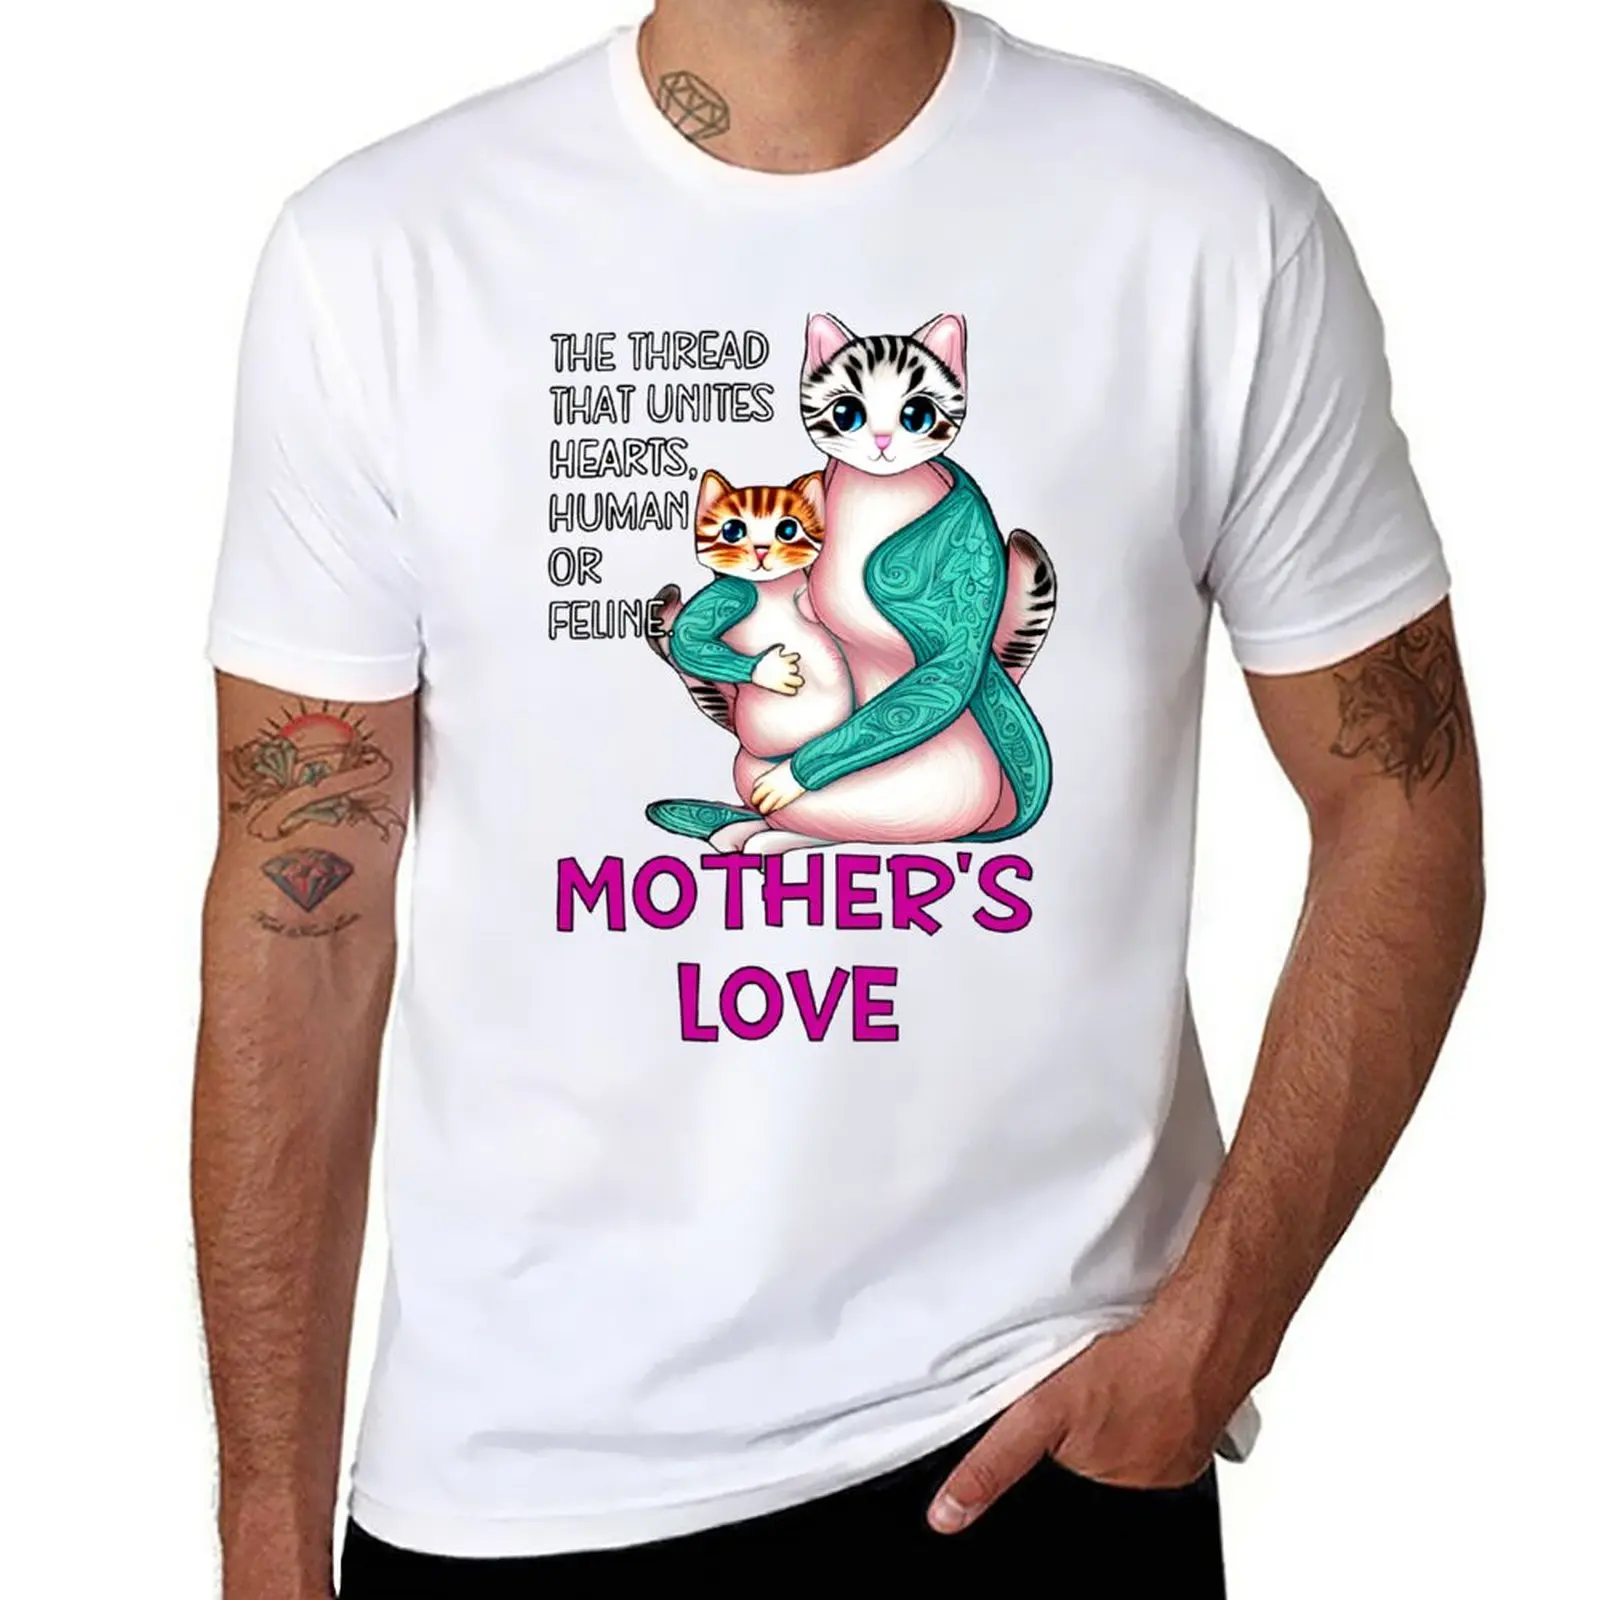 Любовь матери: нить, которая соединяет сердца, человека или кота. Футболка,  аниме одежда, новое издание, футболка, мужская одежда